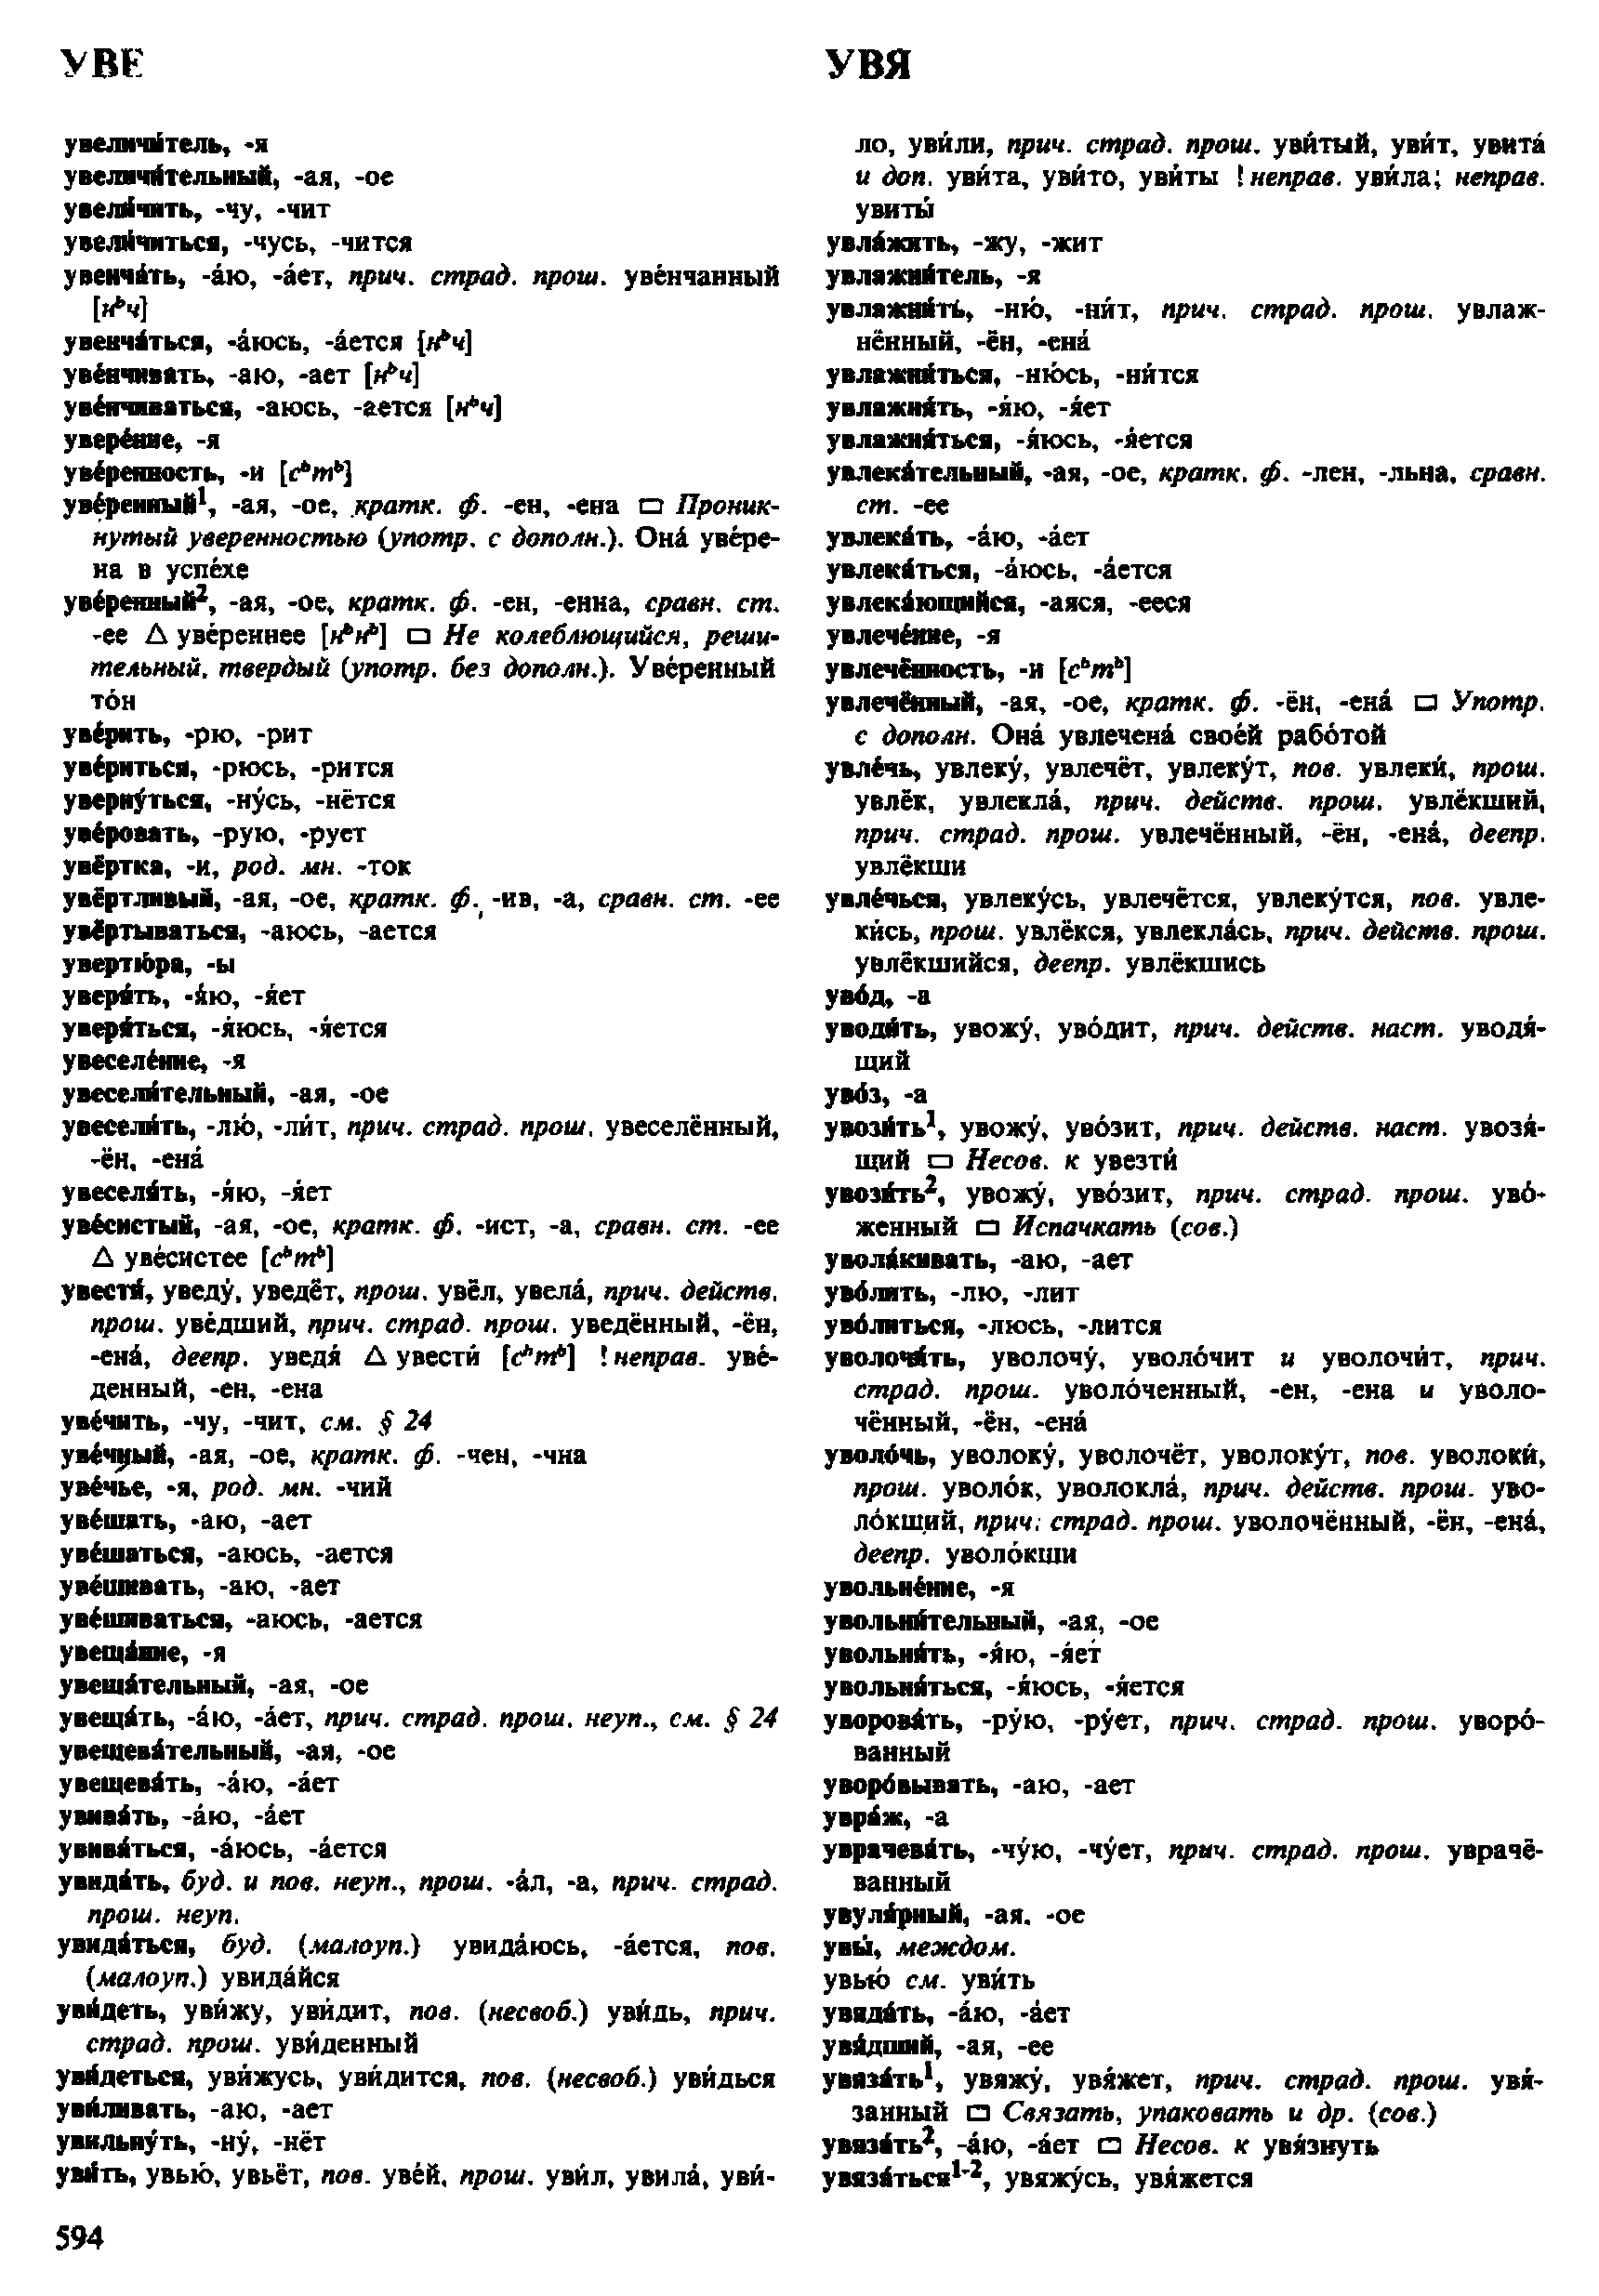 Фотокопия pdf / скан страницы 594 орфоэпического словаря под редакцией Аванесова (4 издание, 1988 год)